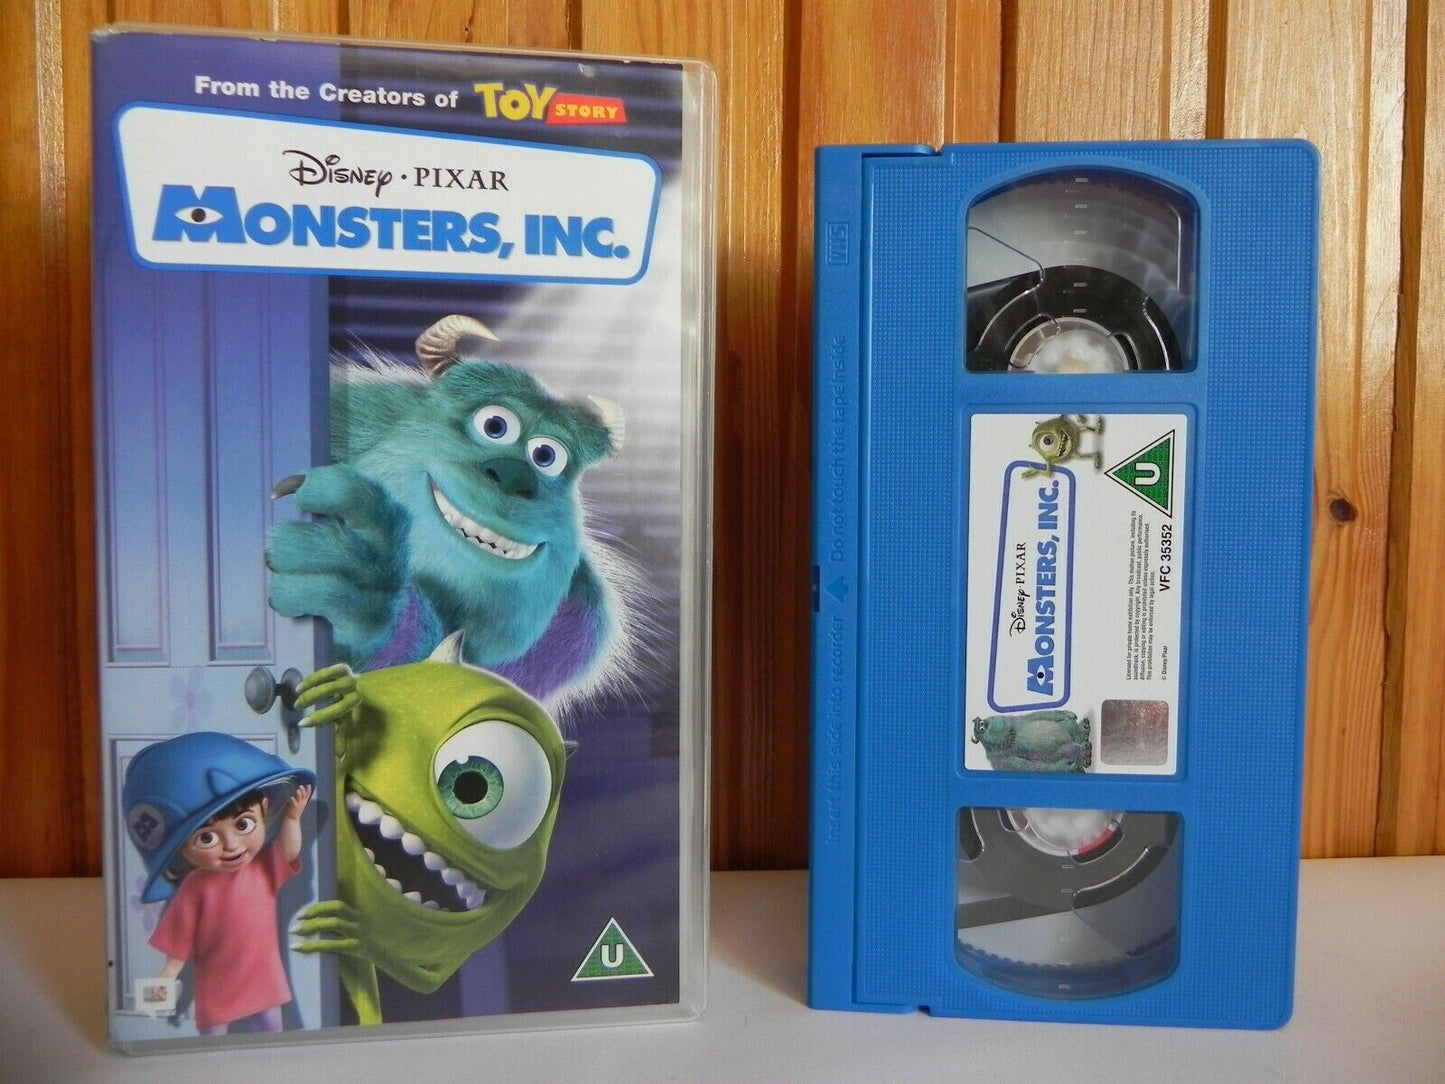 Vintage VHS Video Movie Tape Disney Pixar Toy Story